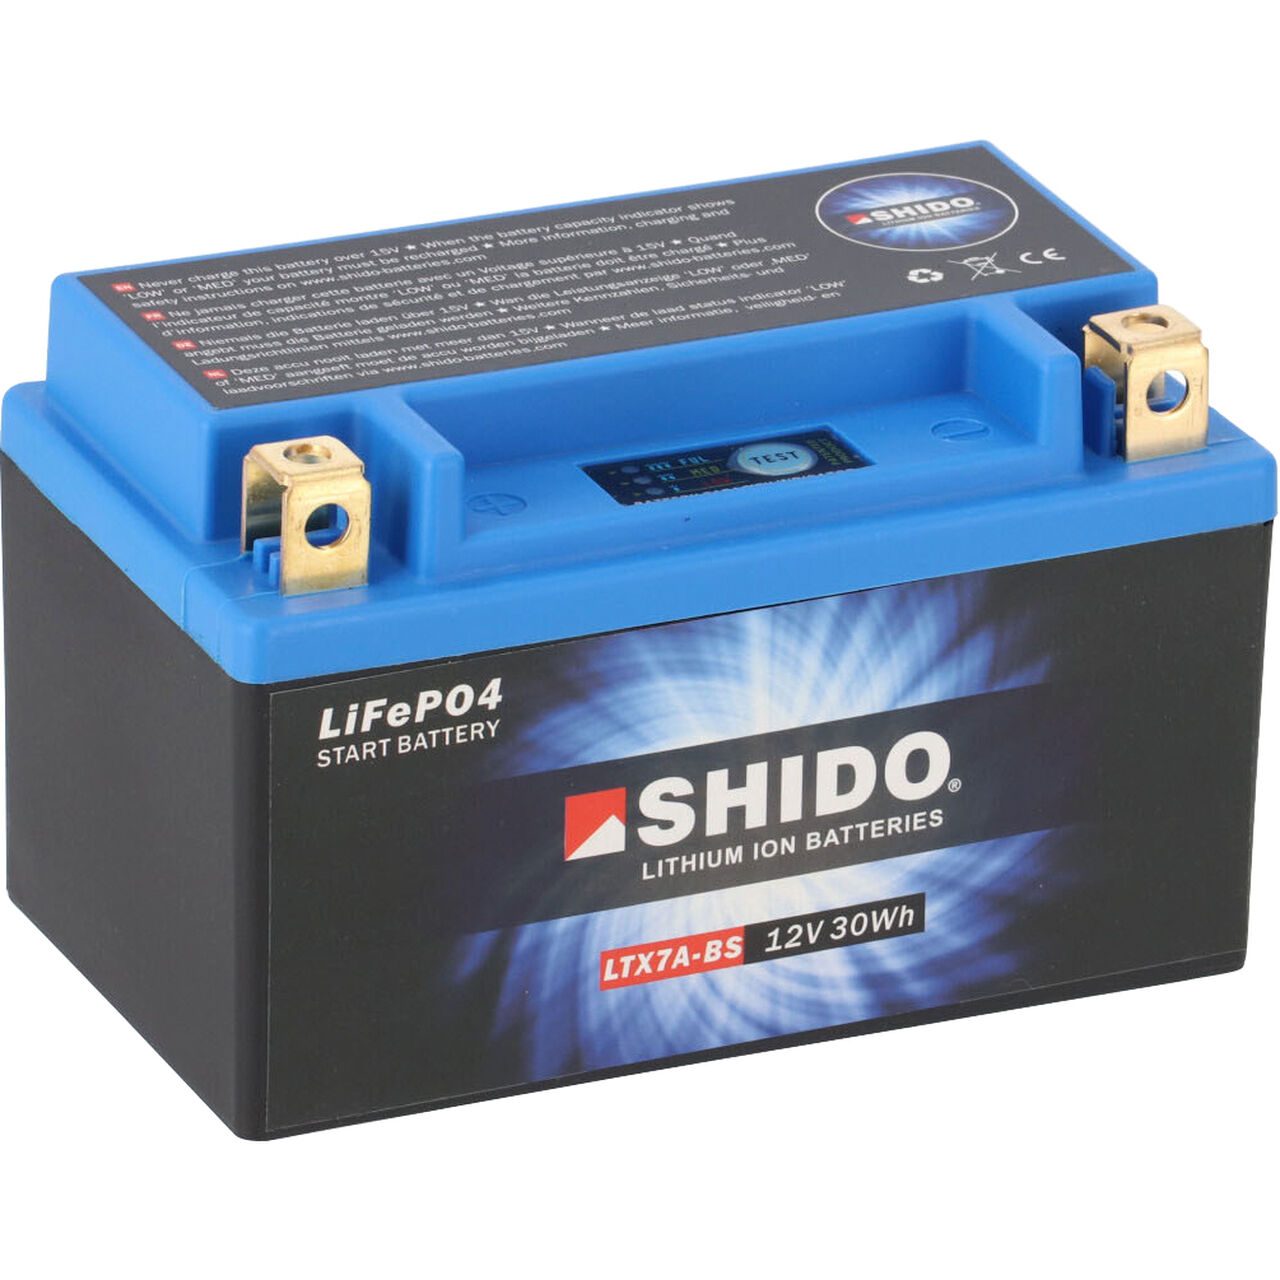 Chargeur de batterie lithium shido 12v 1A